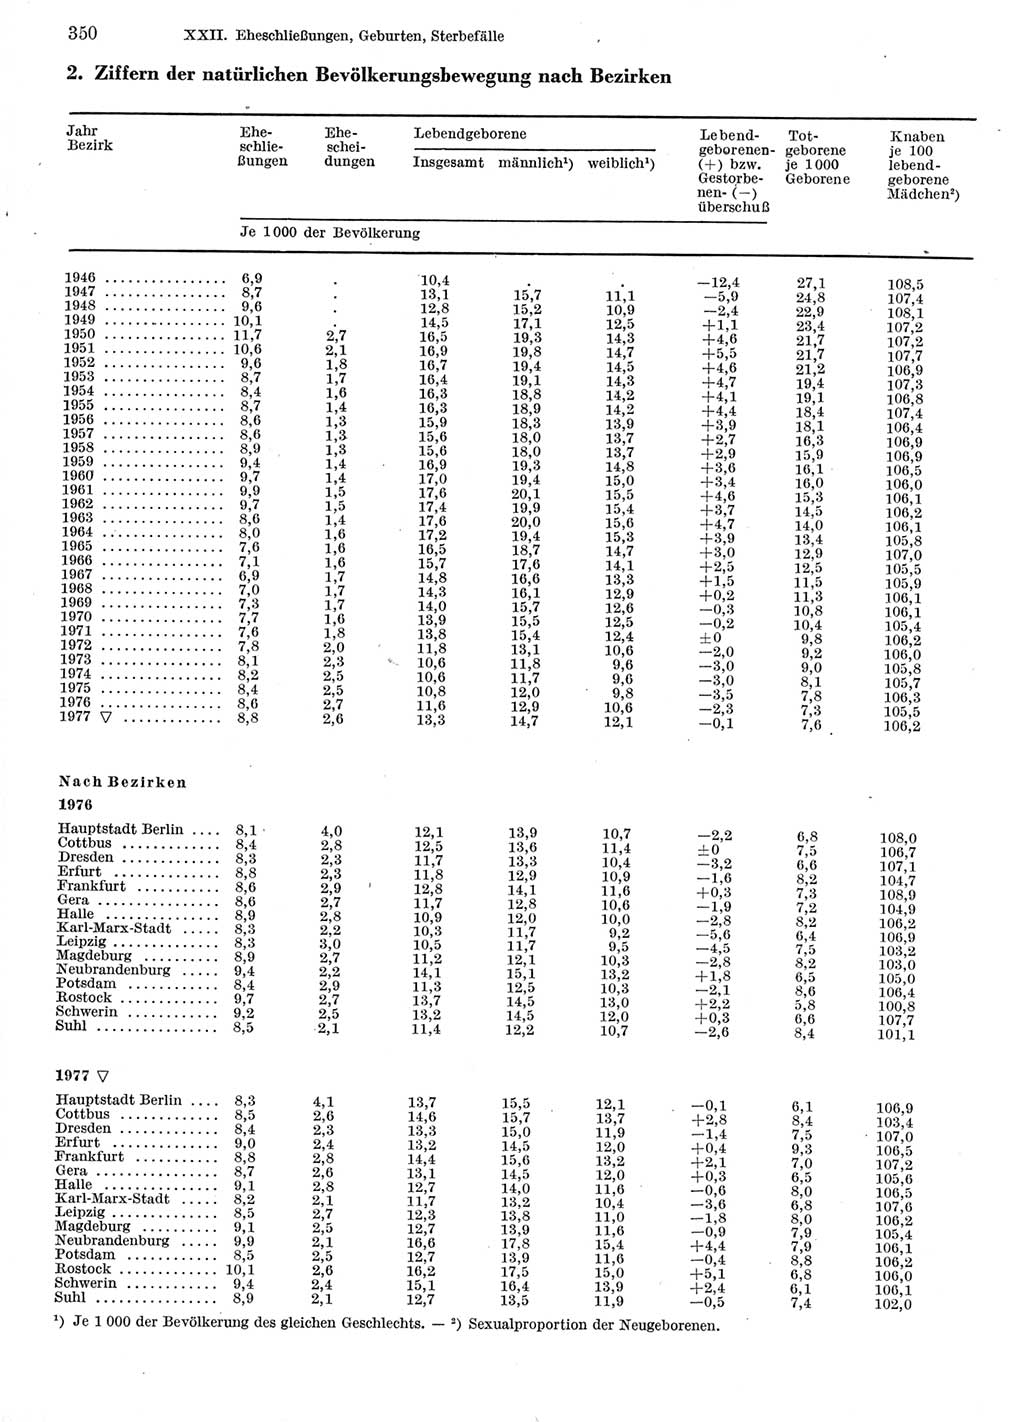 Statistisches Jahrbuch der Deutschen Demokratischen Republik (DDR) 1978, Seite 350 (Stat. Jb. DDR 1978, S. 350)